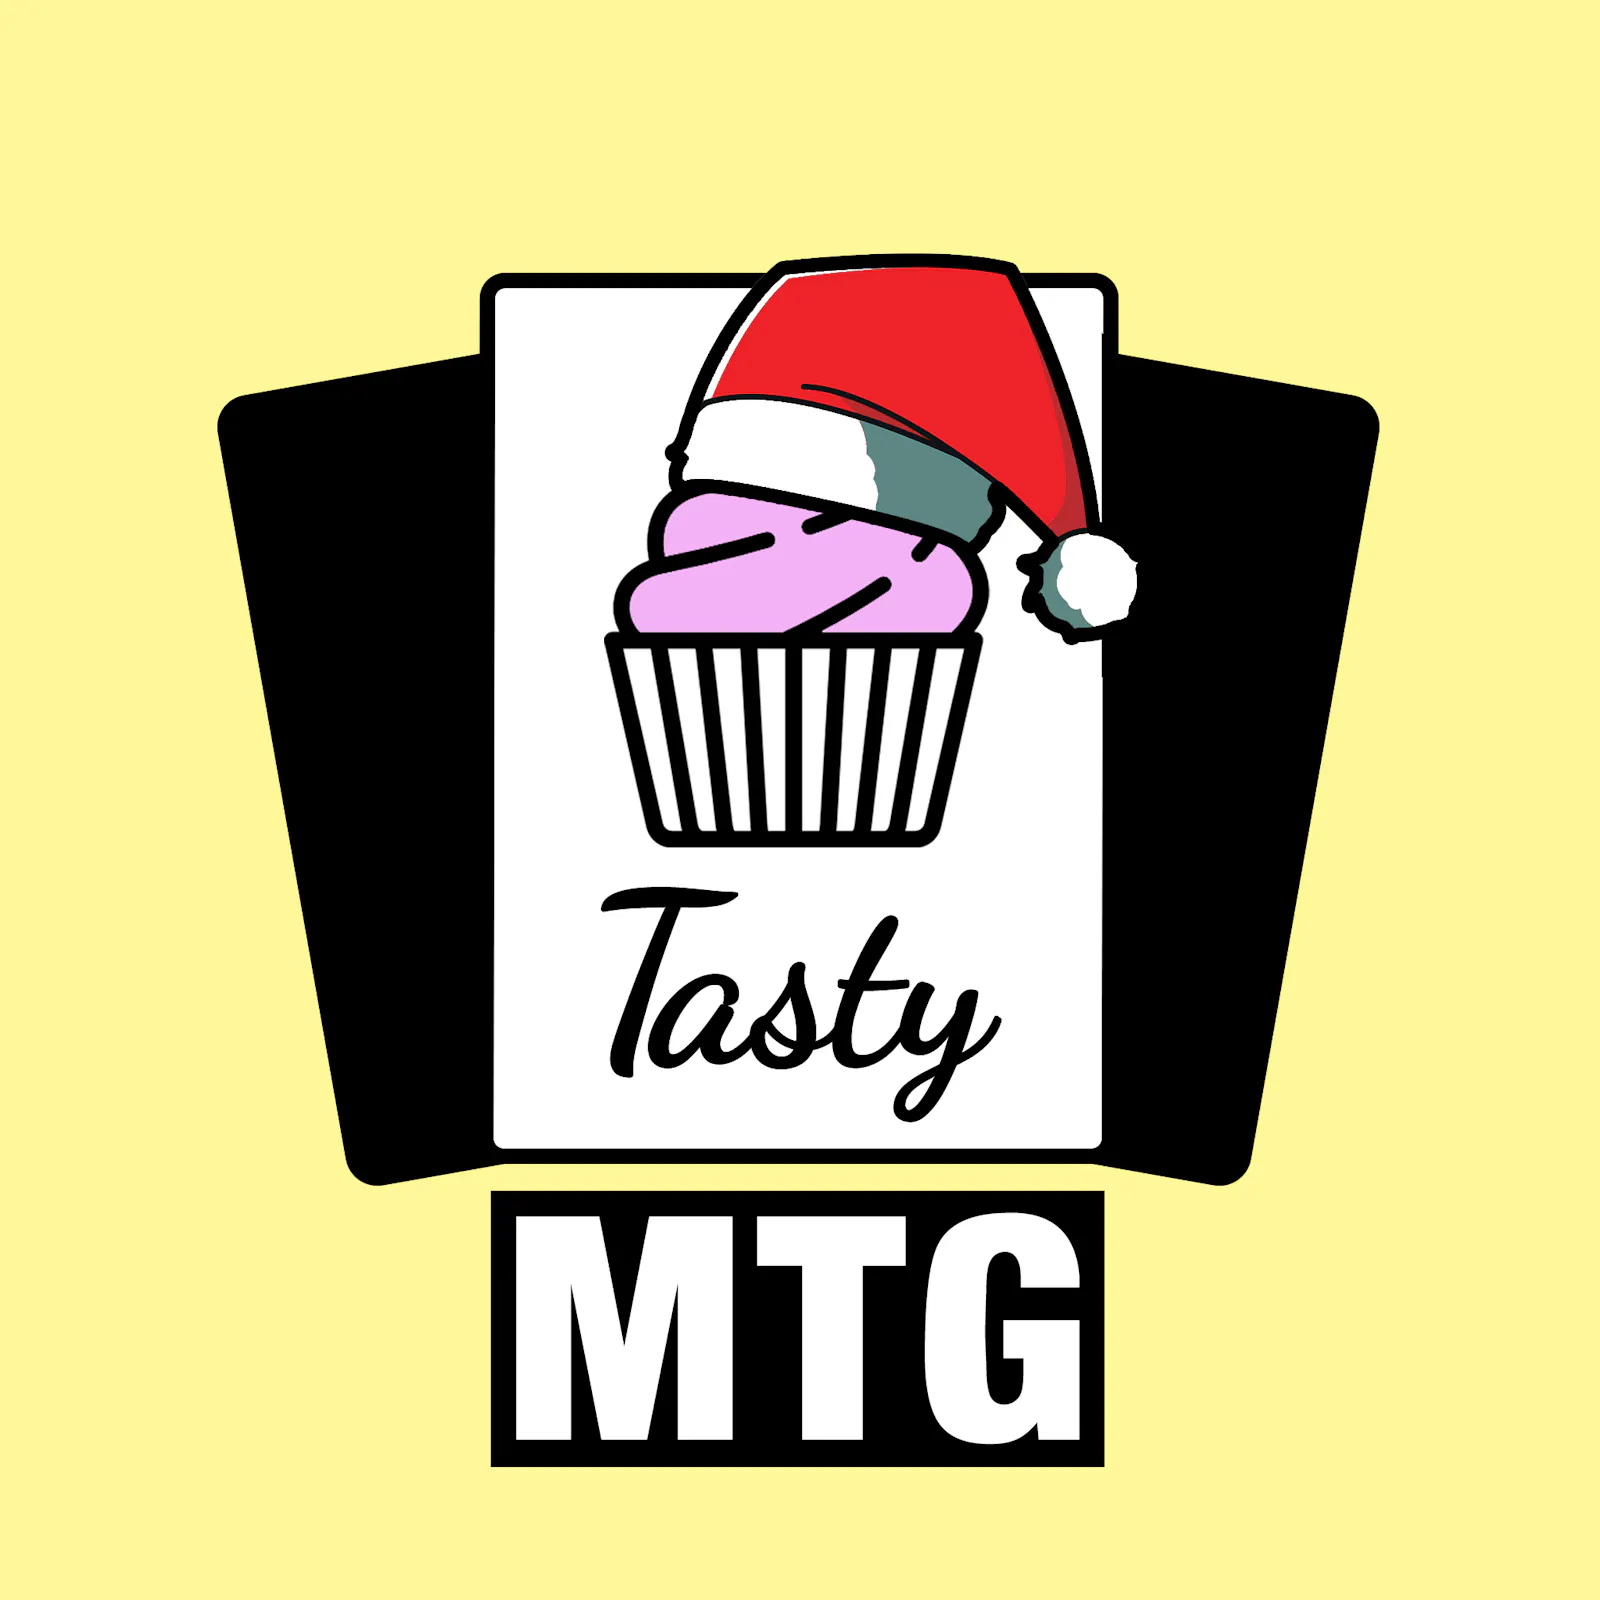 Das Cover zur aktuellen Folge: Der Tasty-MTG-Muffin hat eine Weihnachtsmütze auf.